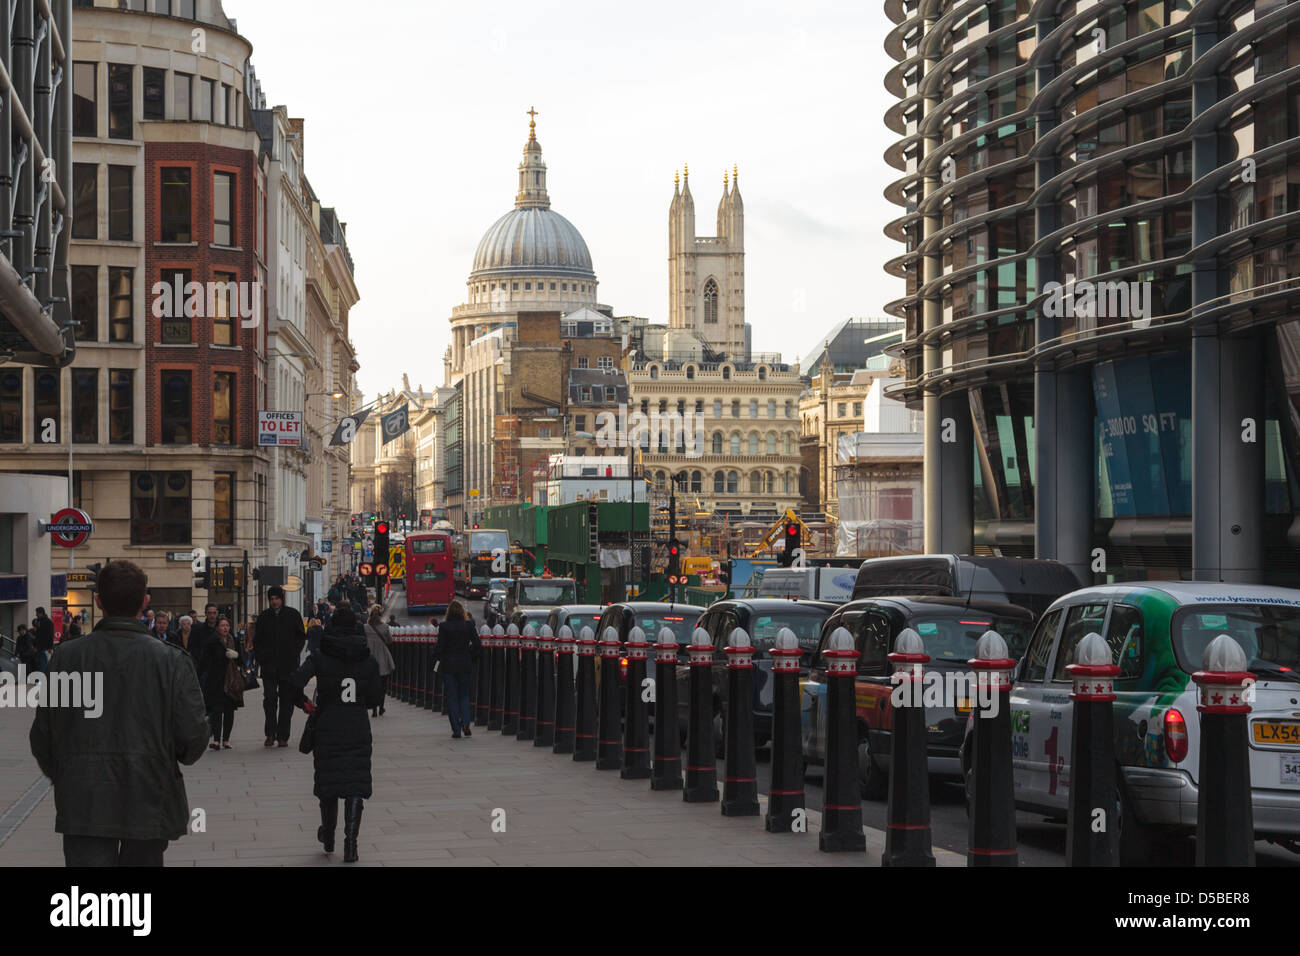 Des taxis, le trafic et des personnes sur Cannon Street, Londres avec la Cathédrale St Paul visible dans la distance Banque D'Images